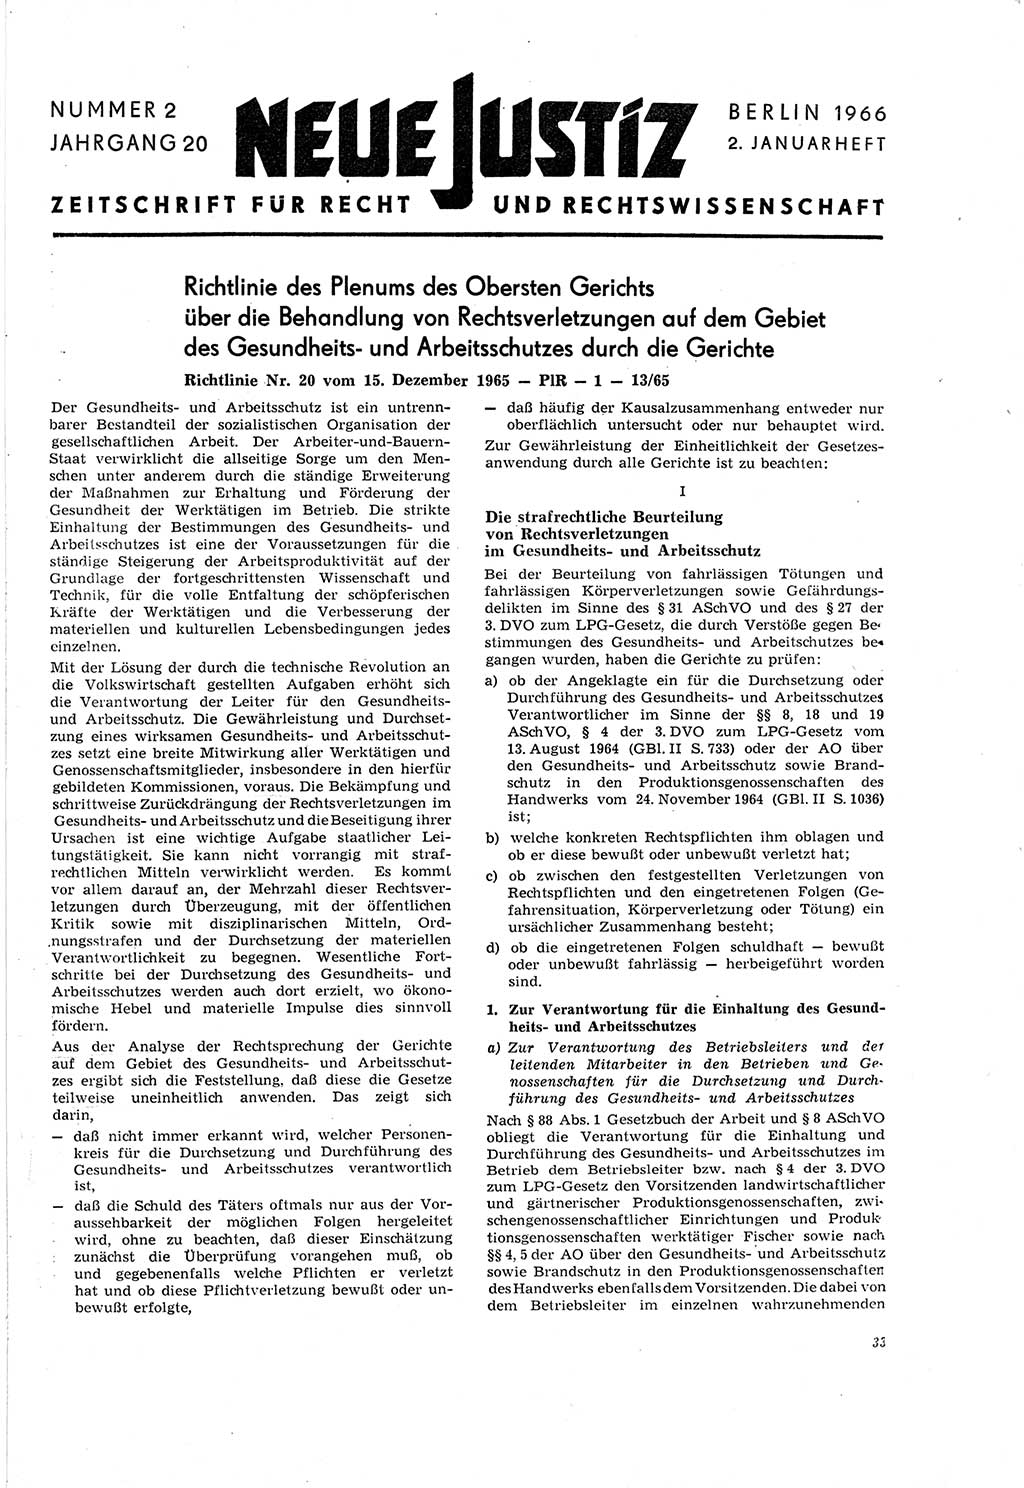 Neue Justiz (NJ), Zeitschrift für Recht und Rechtswissenschaft [Deutsche Demokratische Republik (DDR)], 20. Jahrgang 1966, Seite 33 (NJ DDR 1966, S. 33)